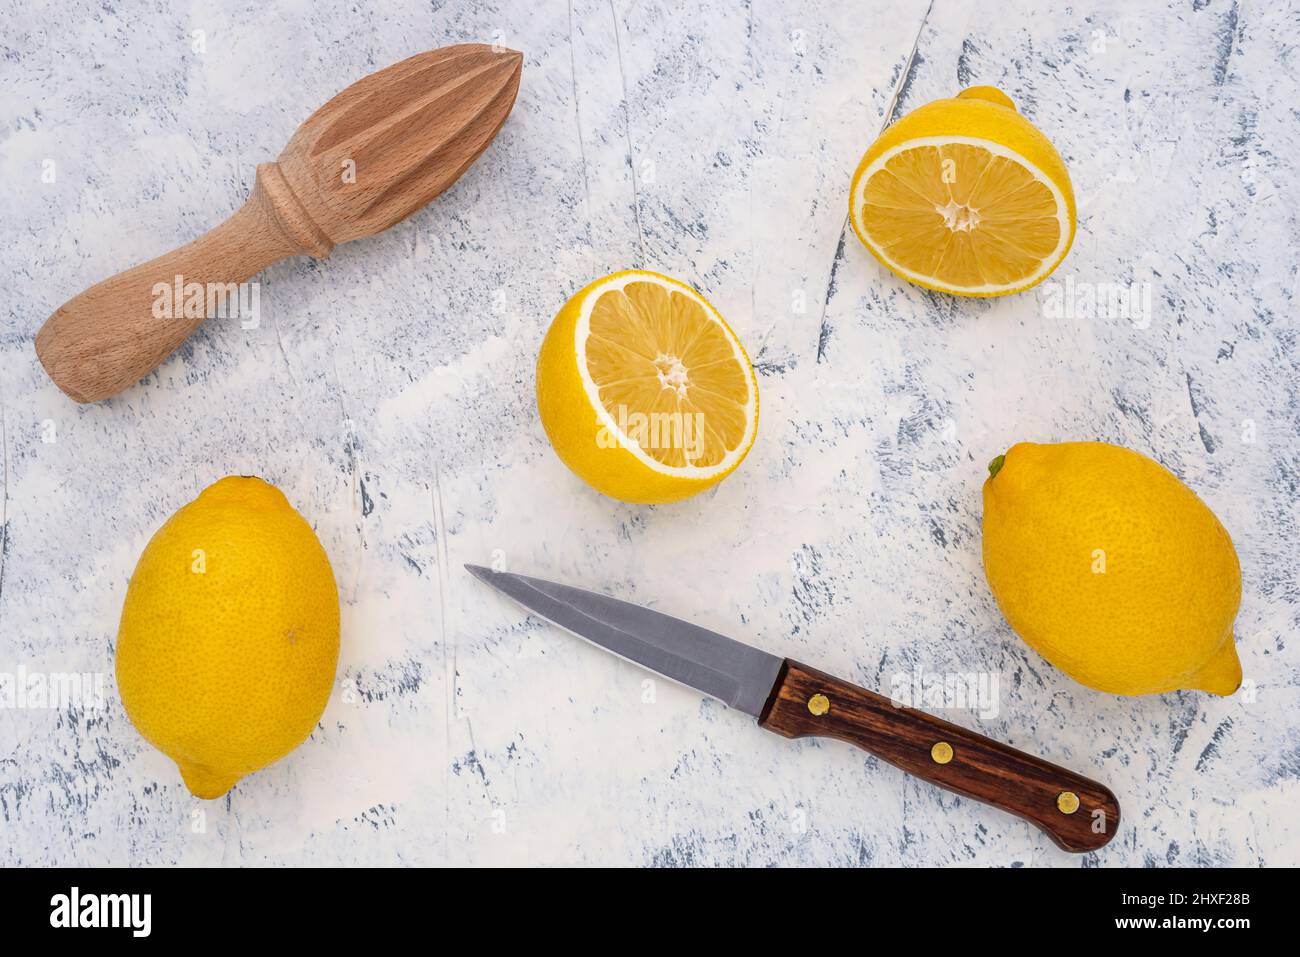 Limone fresco tagliato a metà con coltello da cucina e centrifuga su sfondo bianco-grigio. Vista dall'alto. Foto Stock